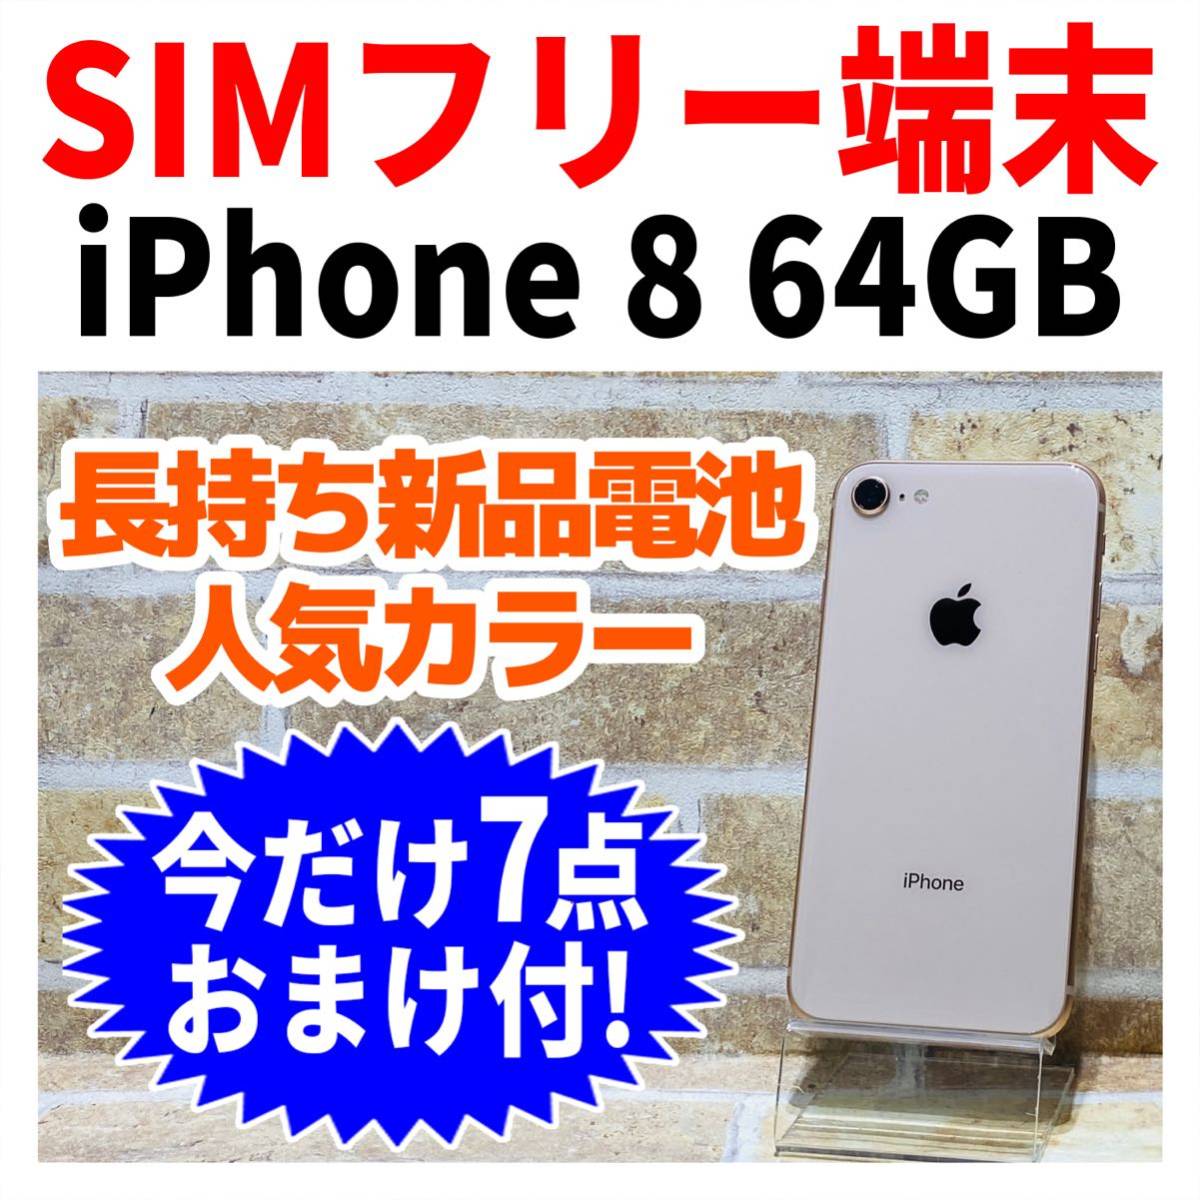 SIMフリー】iPhone8 64GB | www.myglobaltax.com